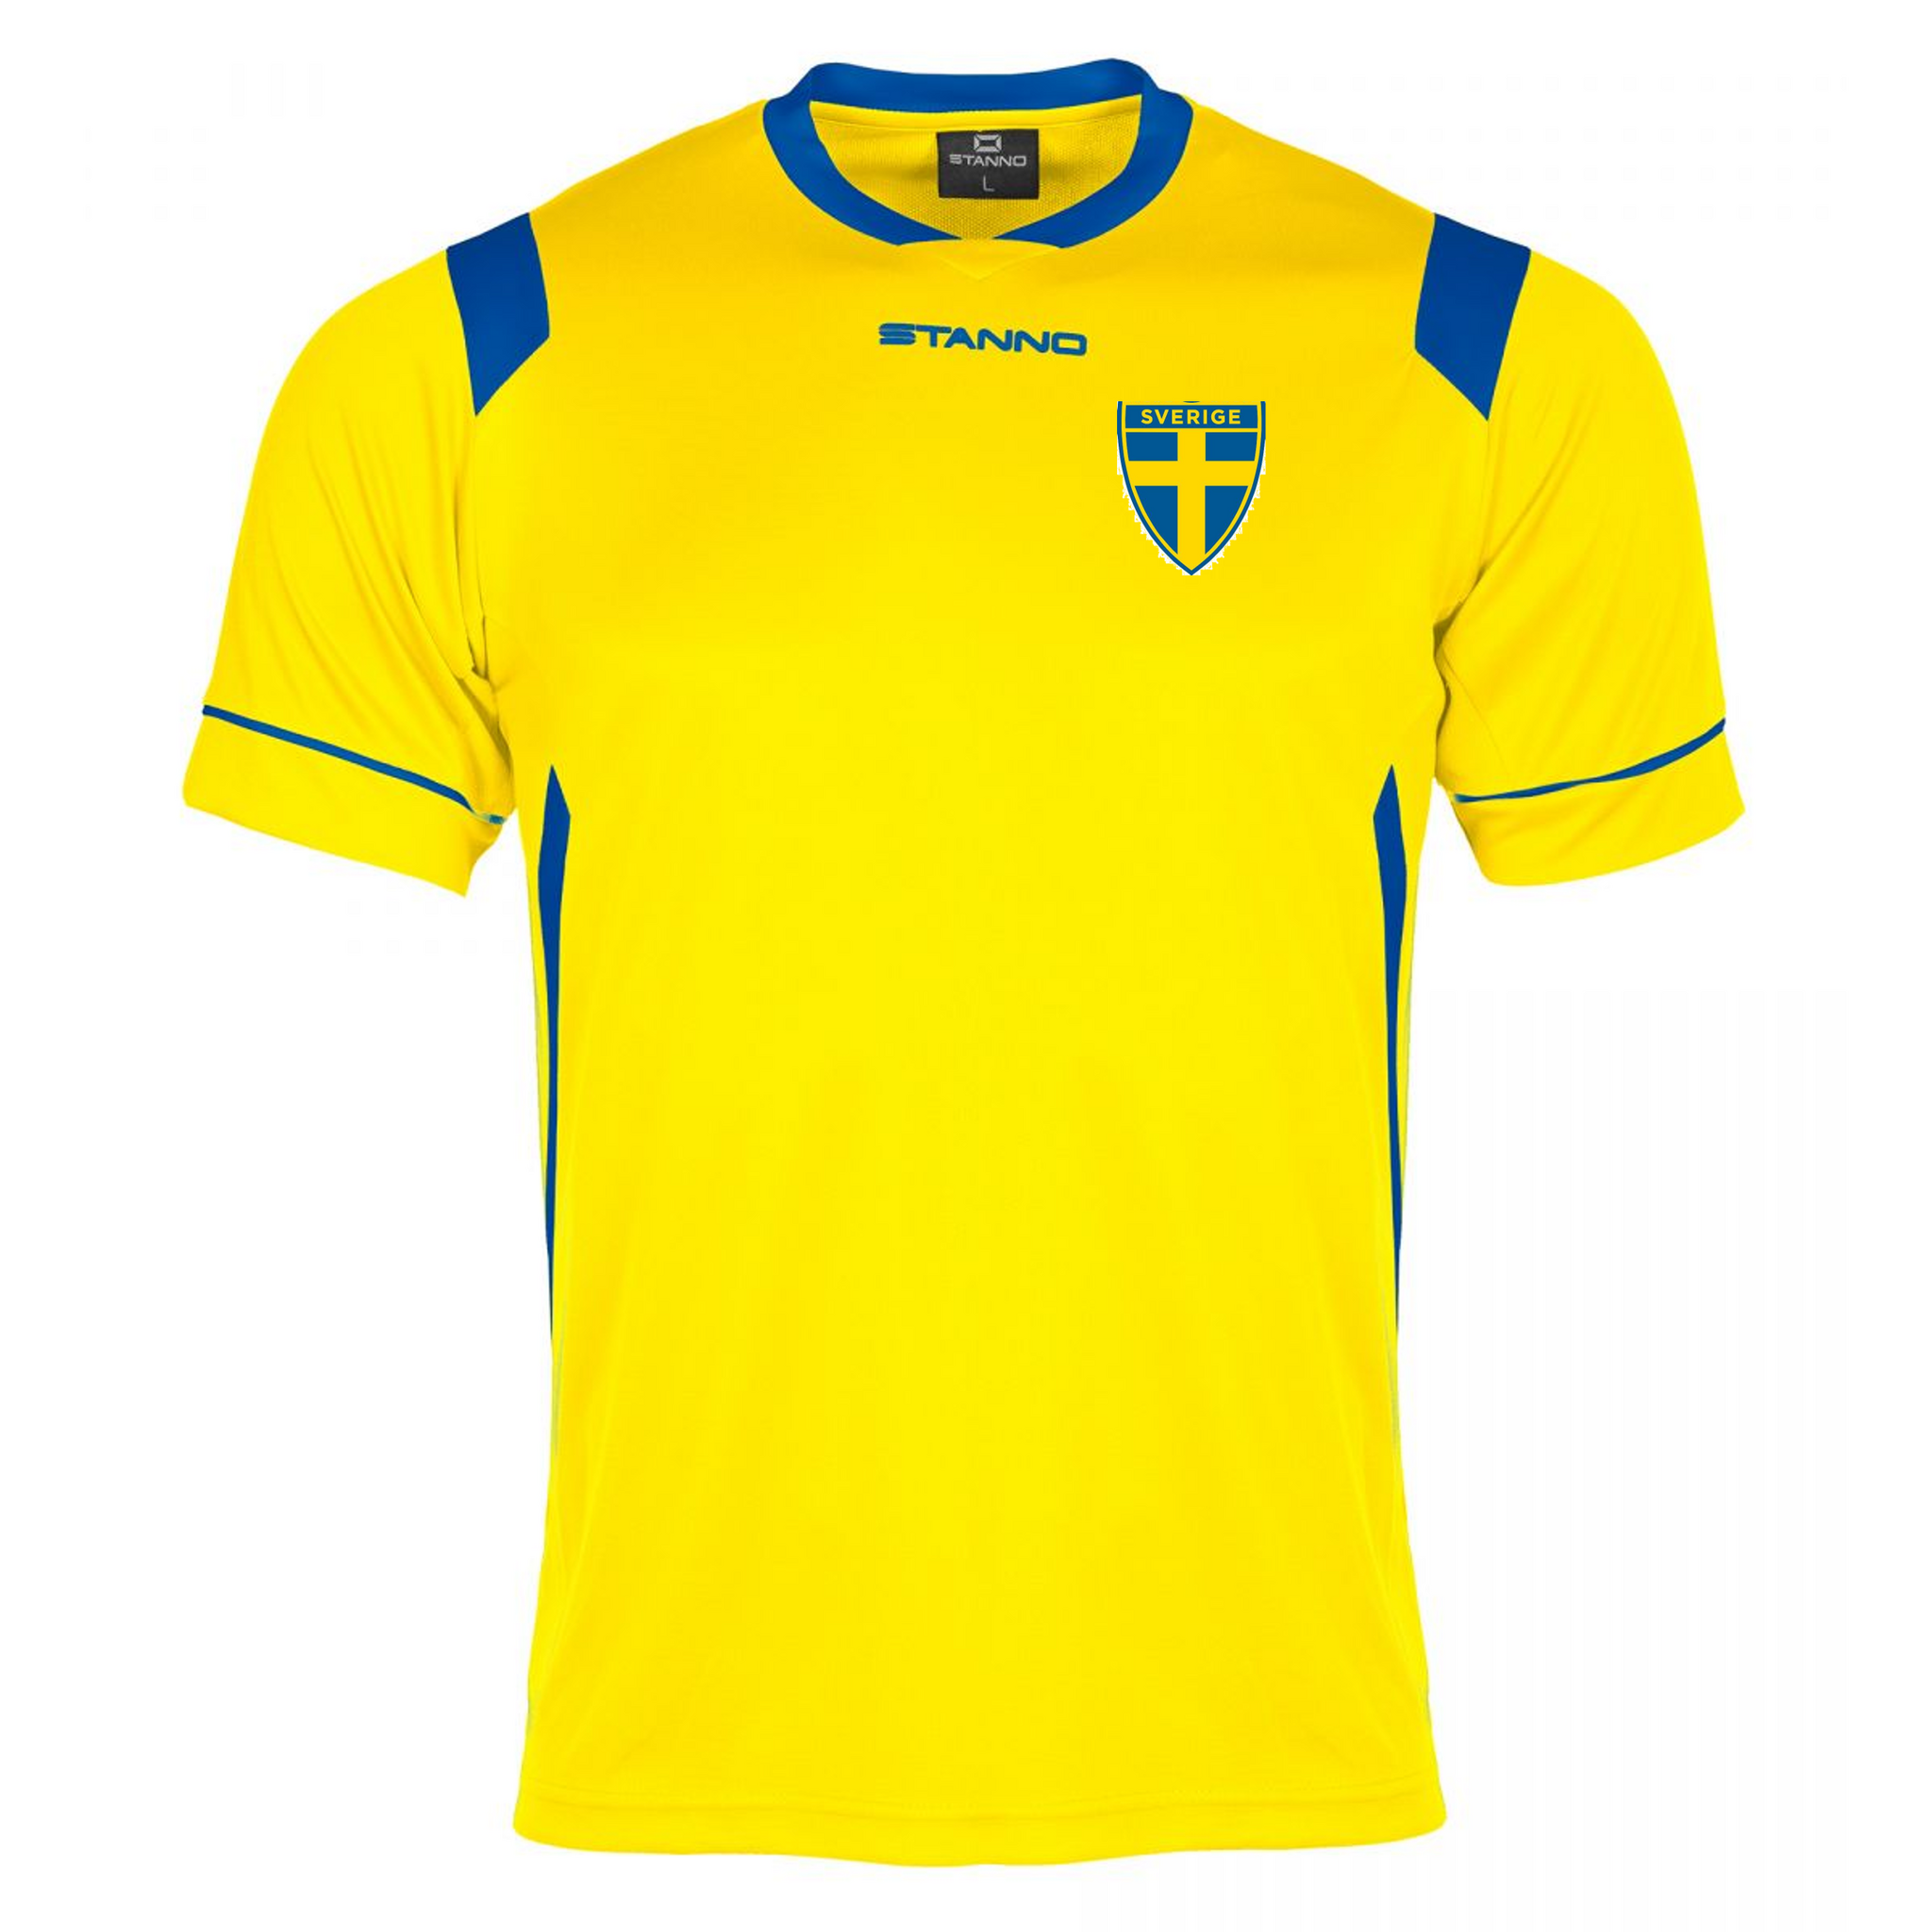 Heja Sverige - Stanno Arezzo Matchtröja - Välj eget tryck - Teamsales store  - Sportprodukter till ett bra pris